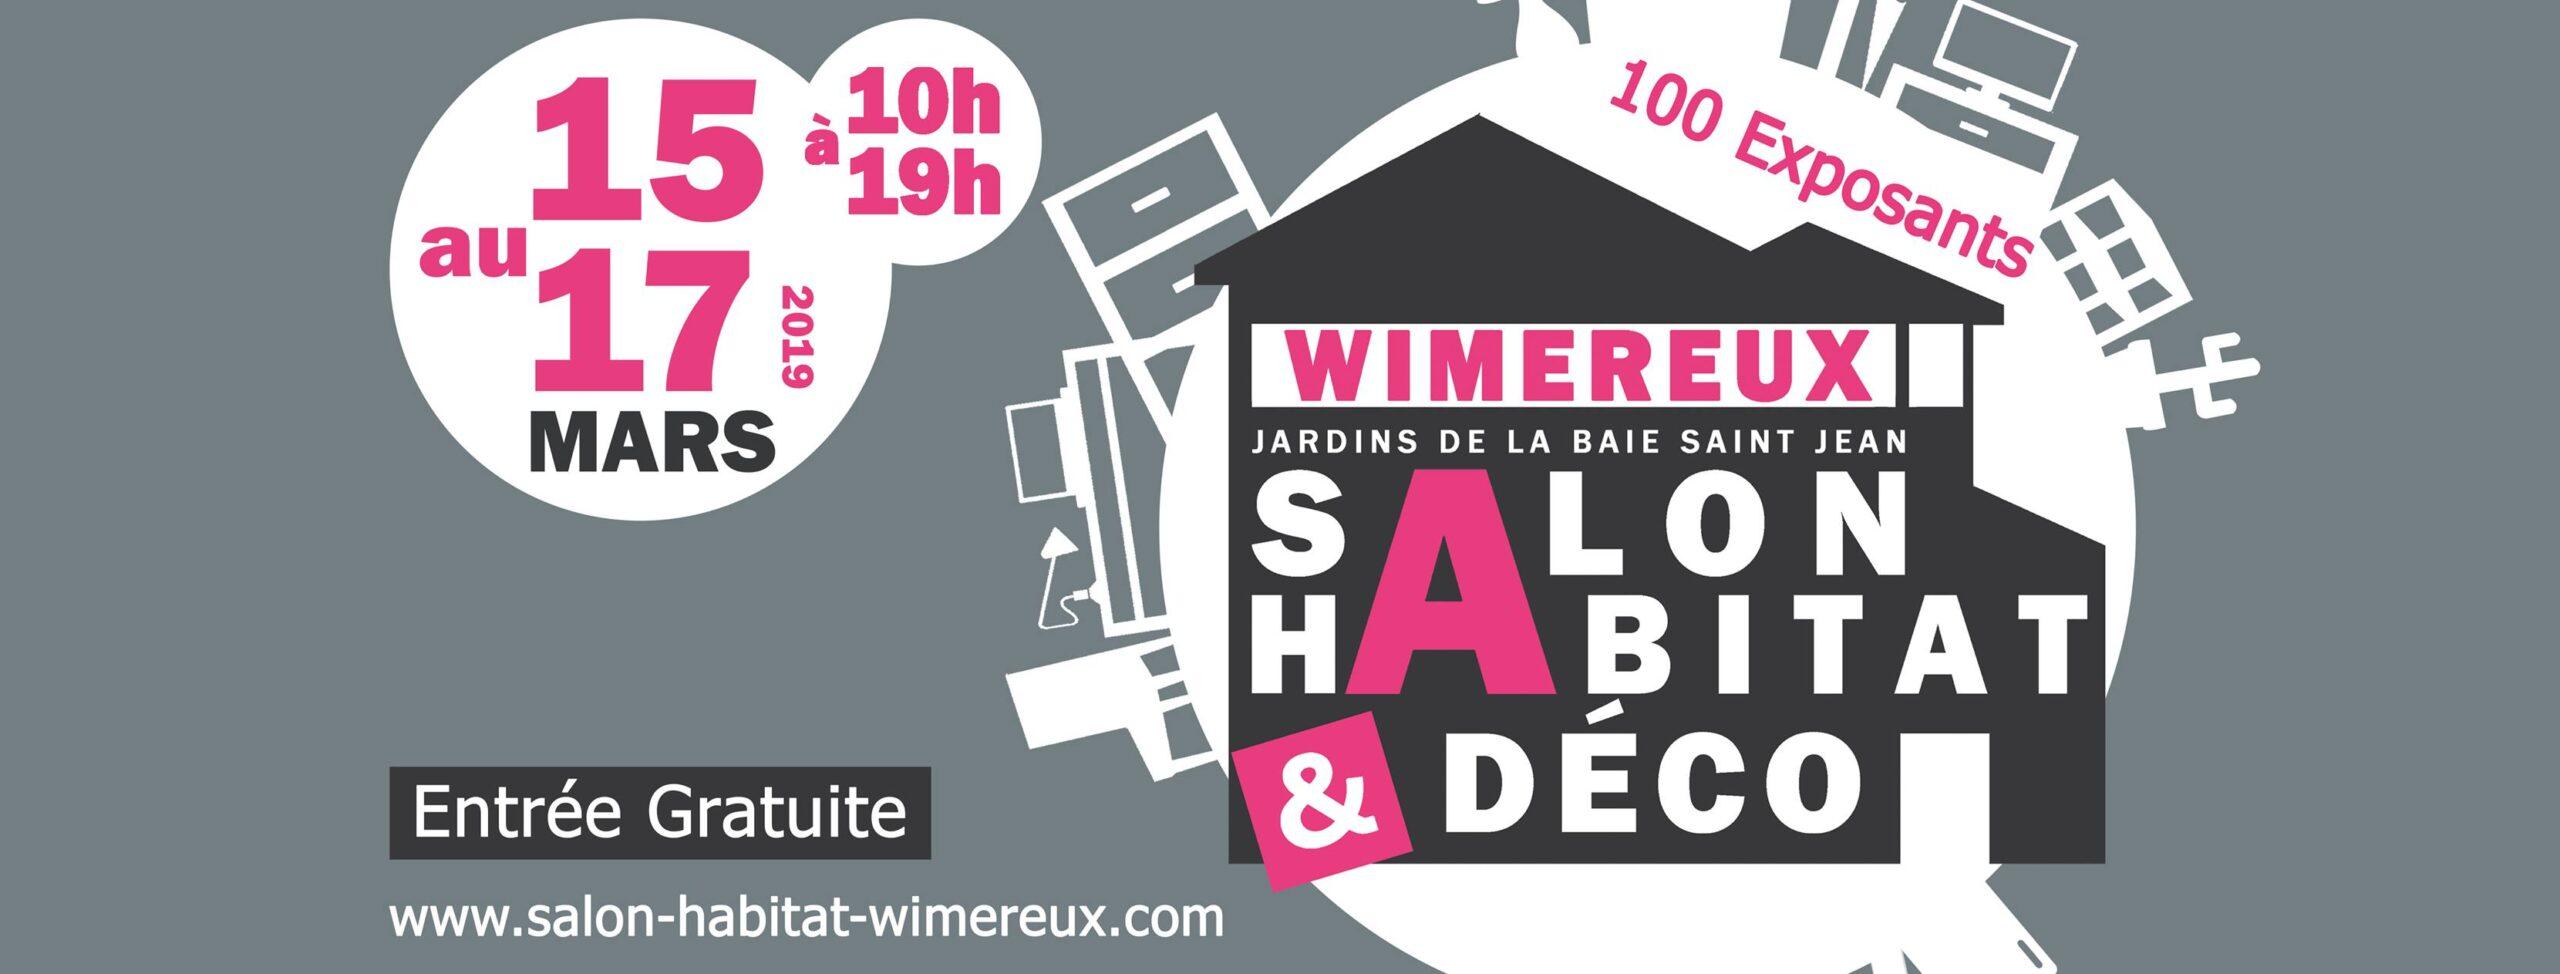 Salon Habitat & Déco Wimereux 2019